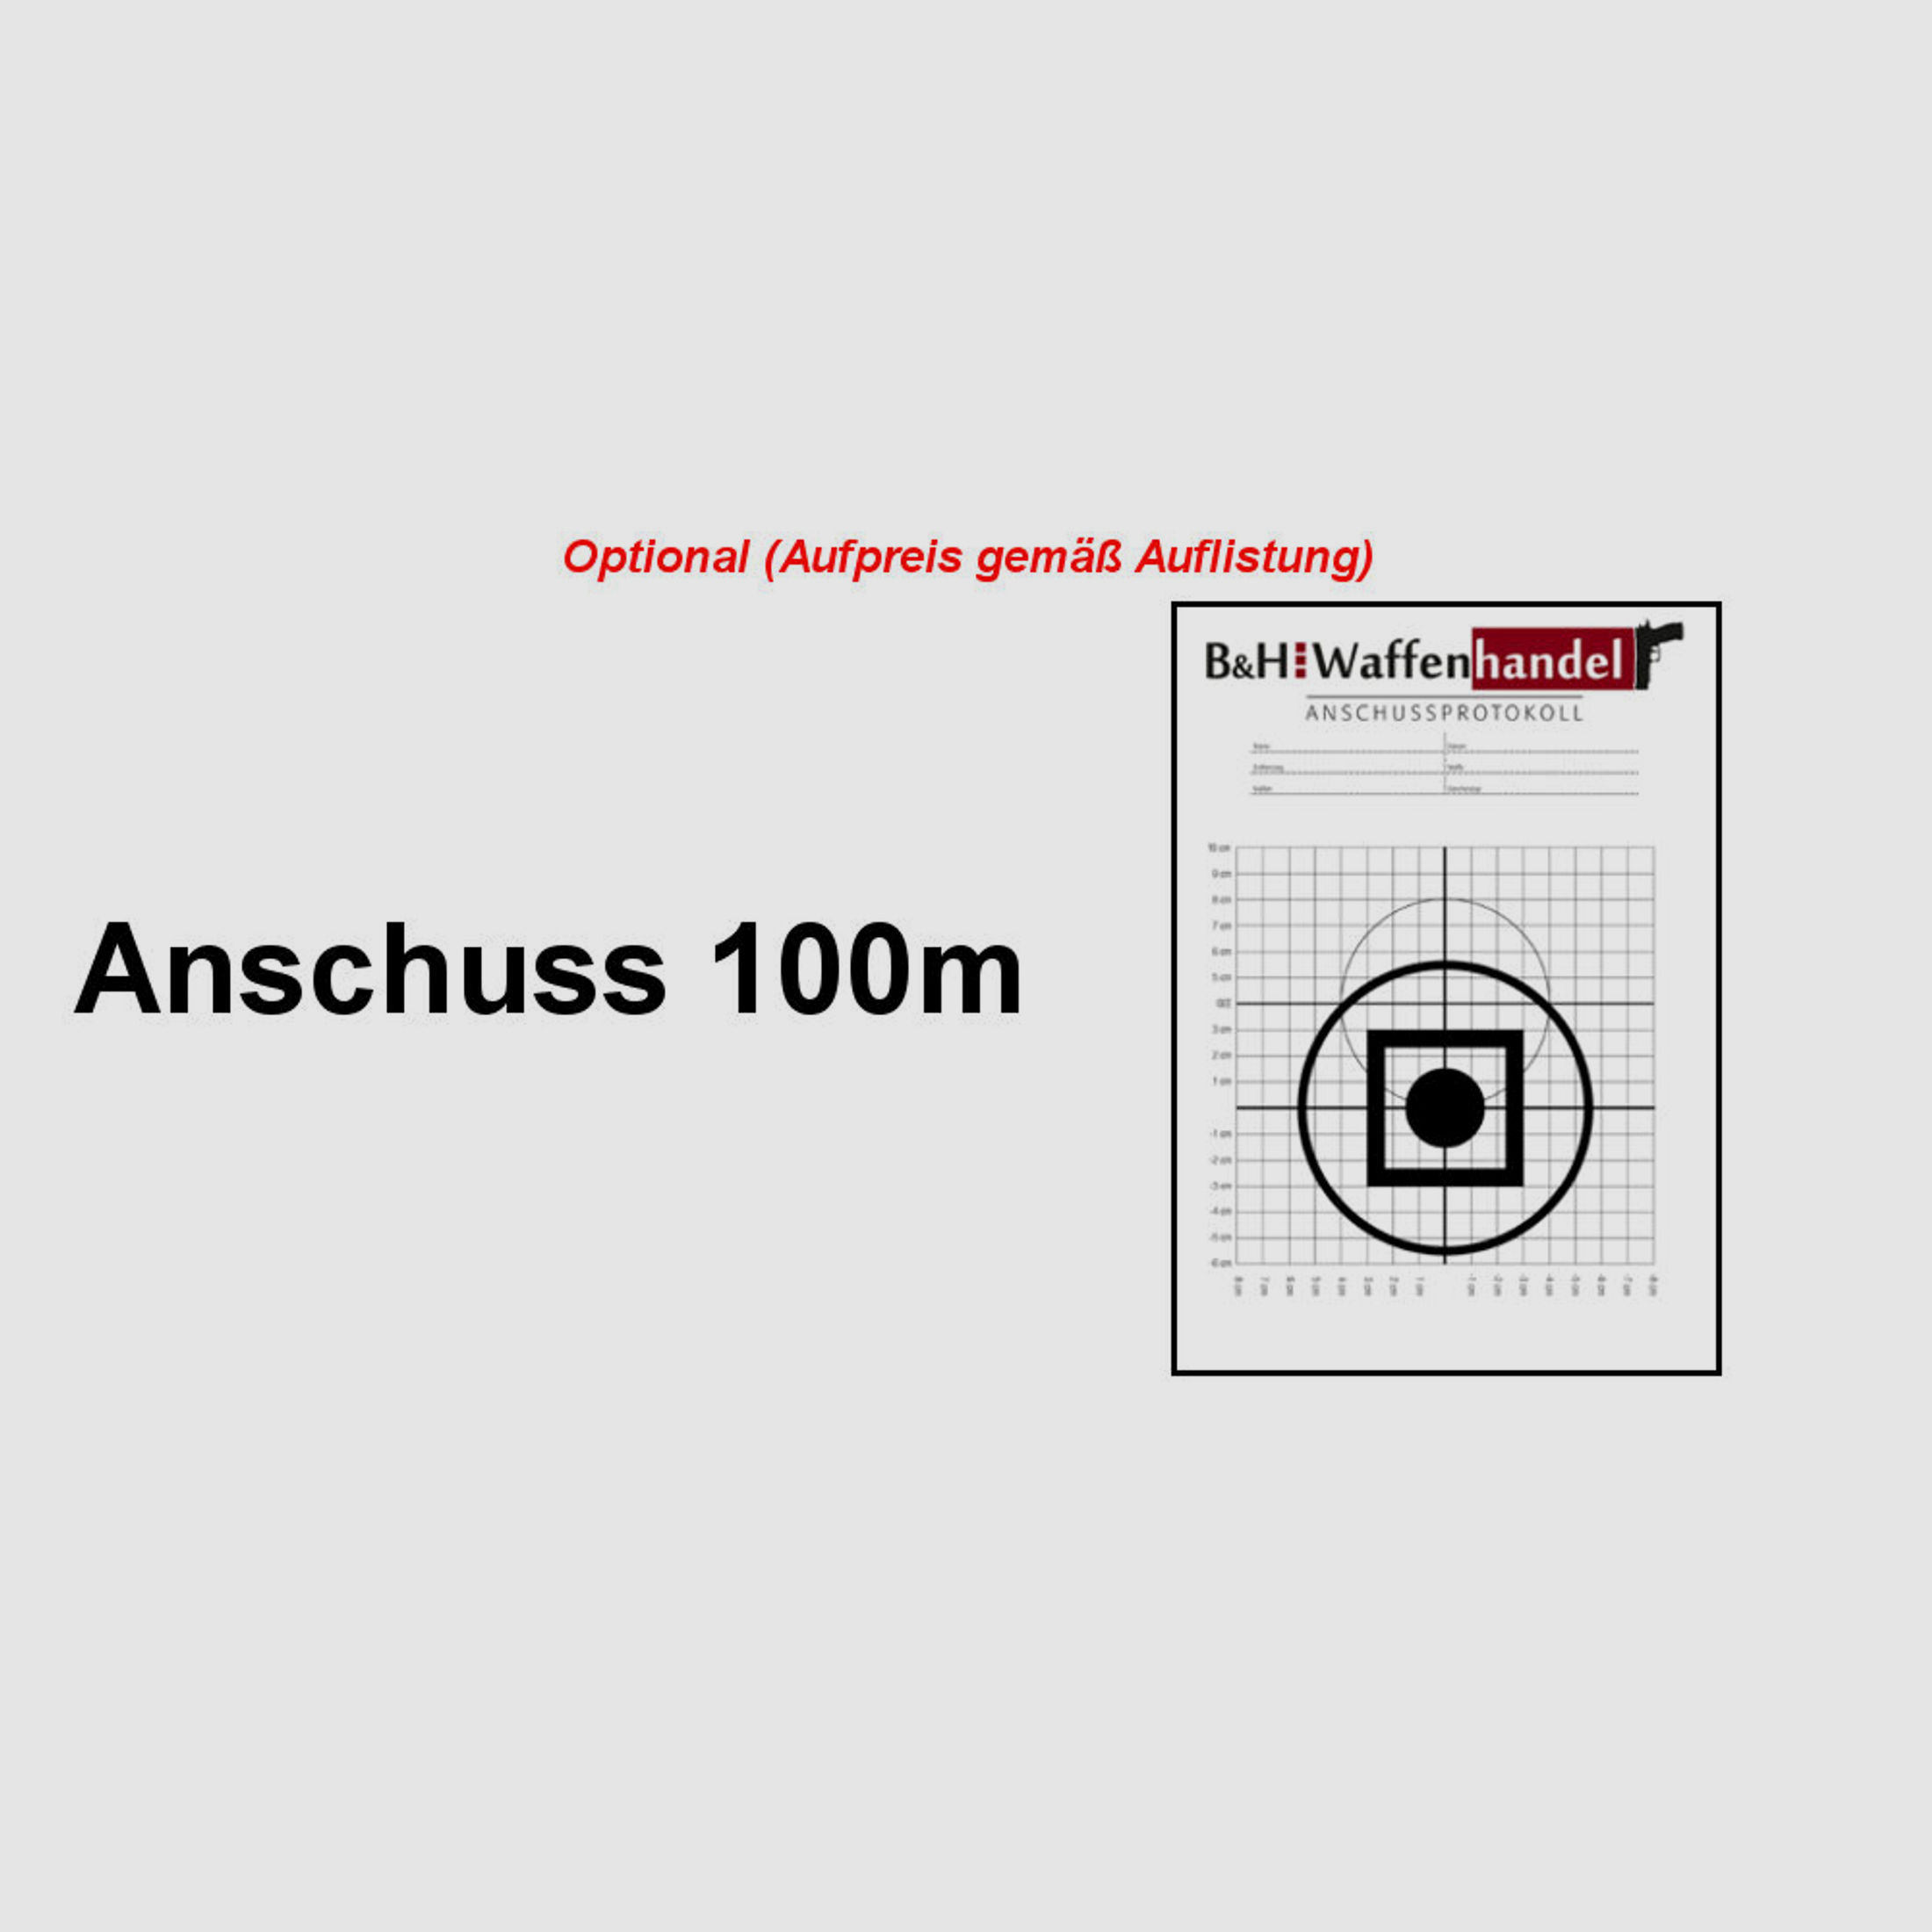 Brenner Komplettpaket:	 BR20 Repetierer Nussbaum-Schaft mit Kahles Helia 2.4-12x56i Komplettset Jagdbüchse